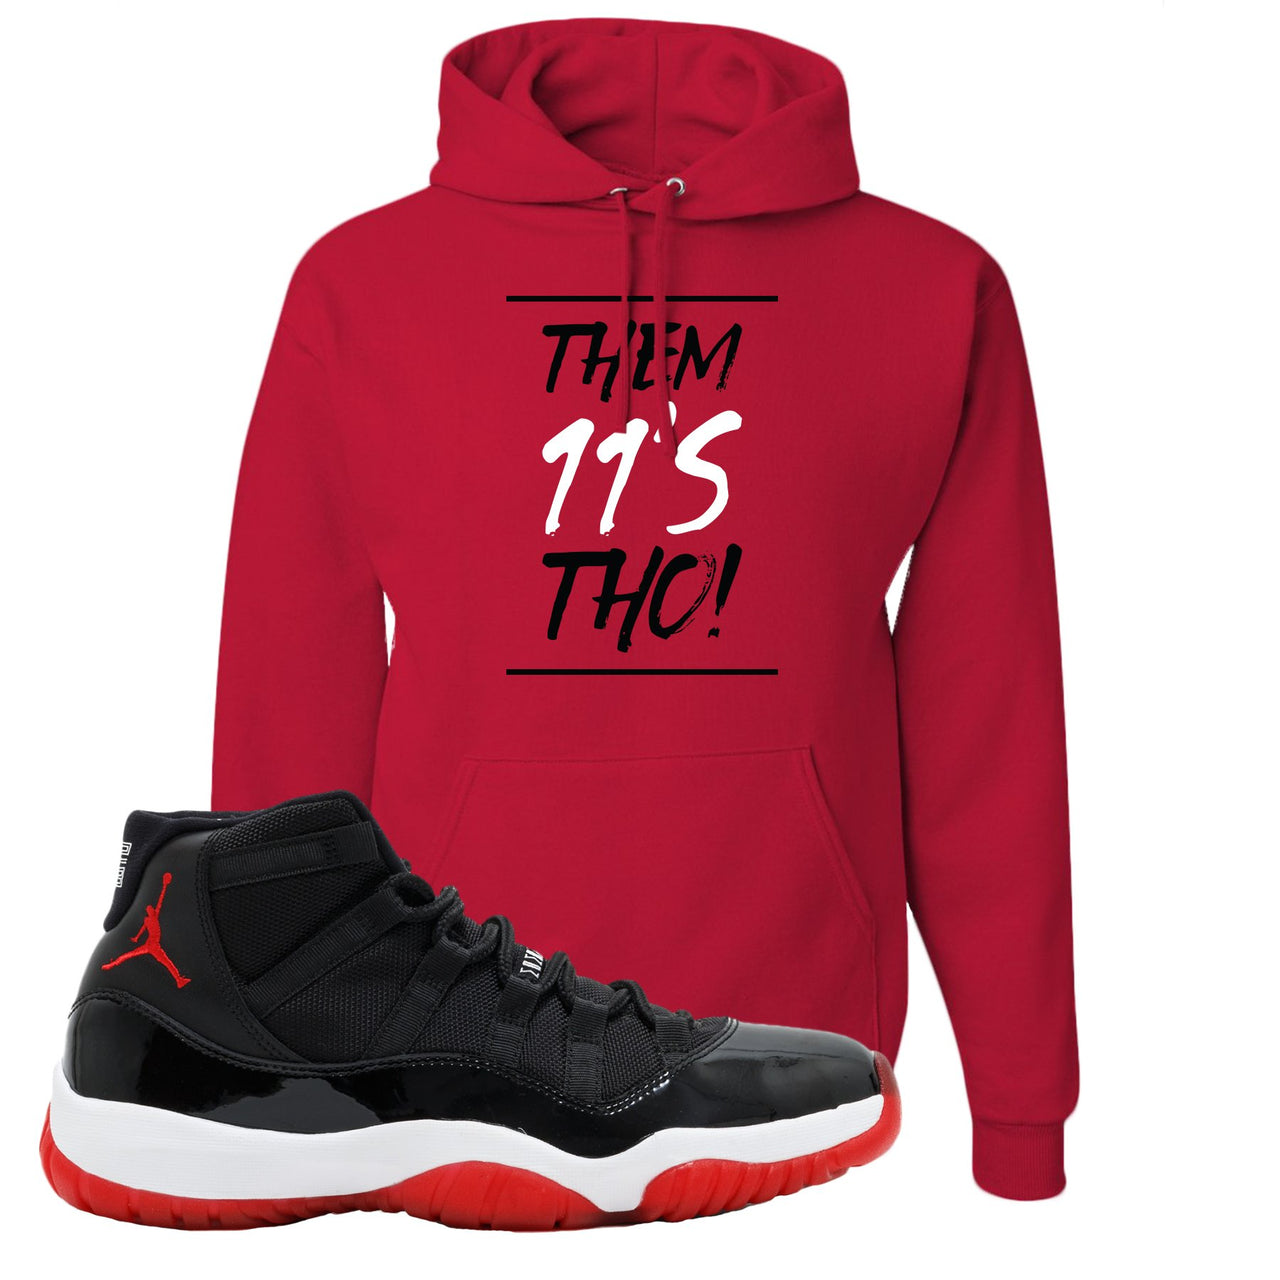 Jordan 11 Bred Them 11s Tho! Red Sneaker Hook Up Pullover Hoodie